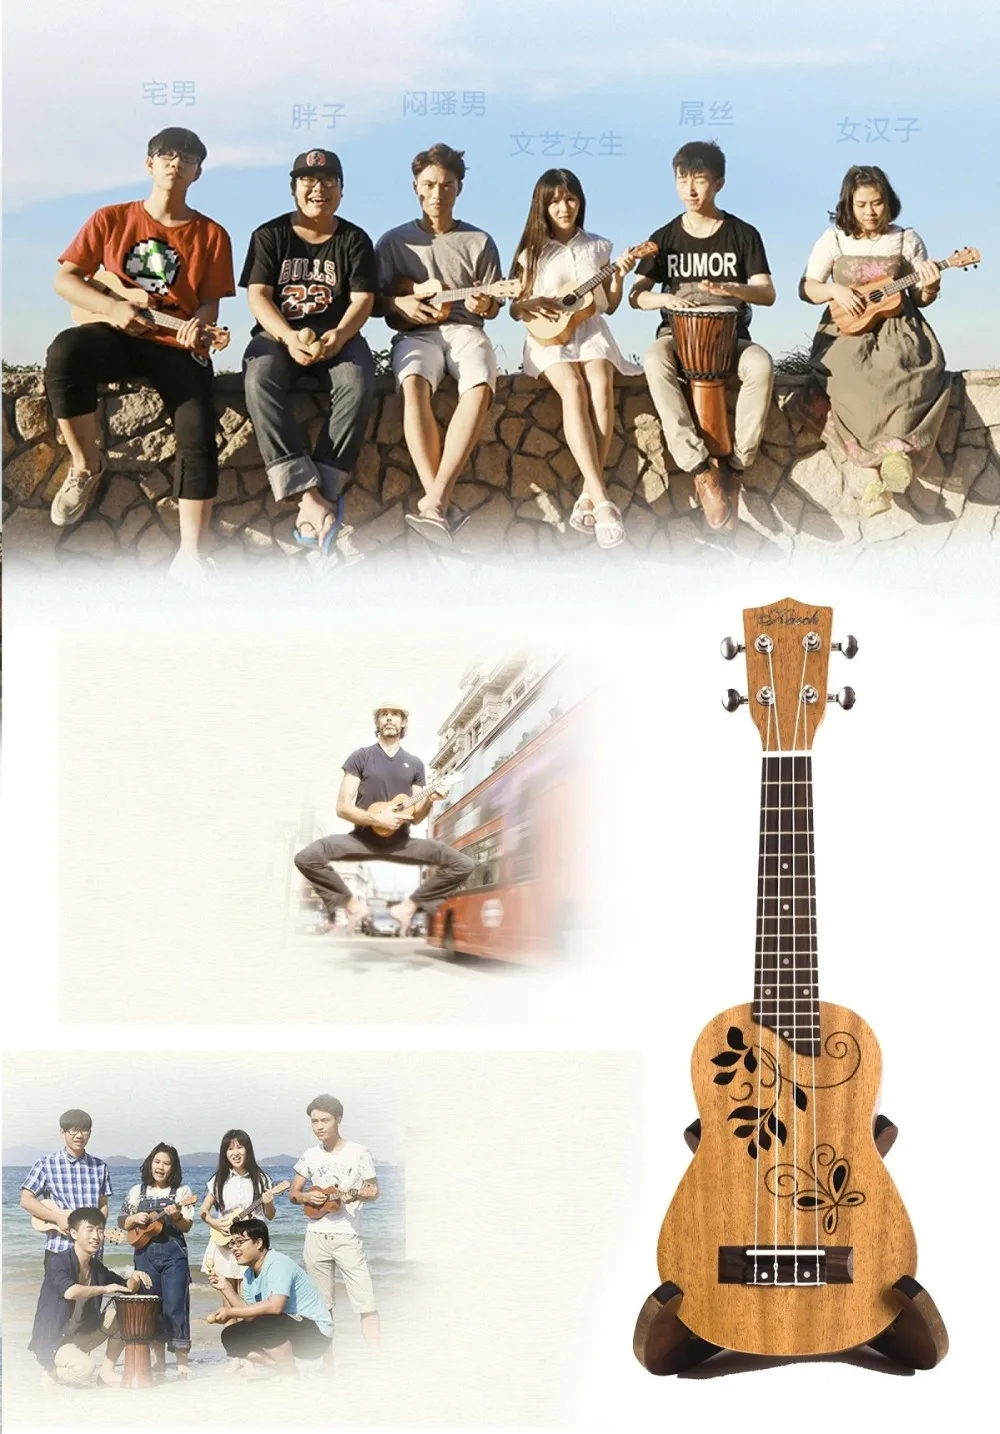 Kasch 21 compact compact compacto ukelele ukulele